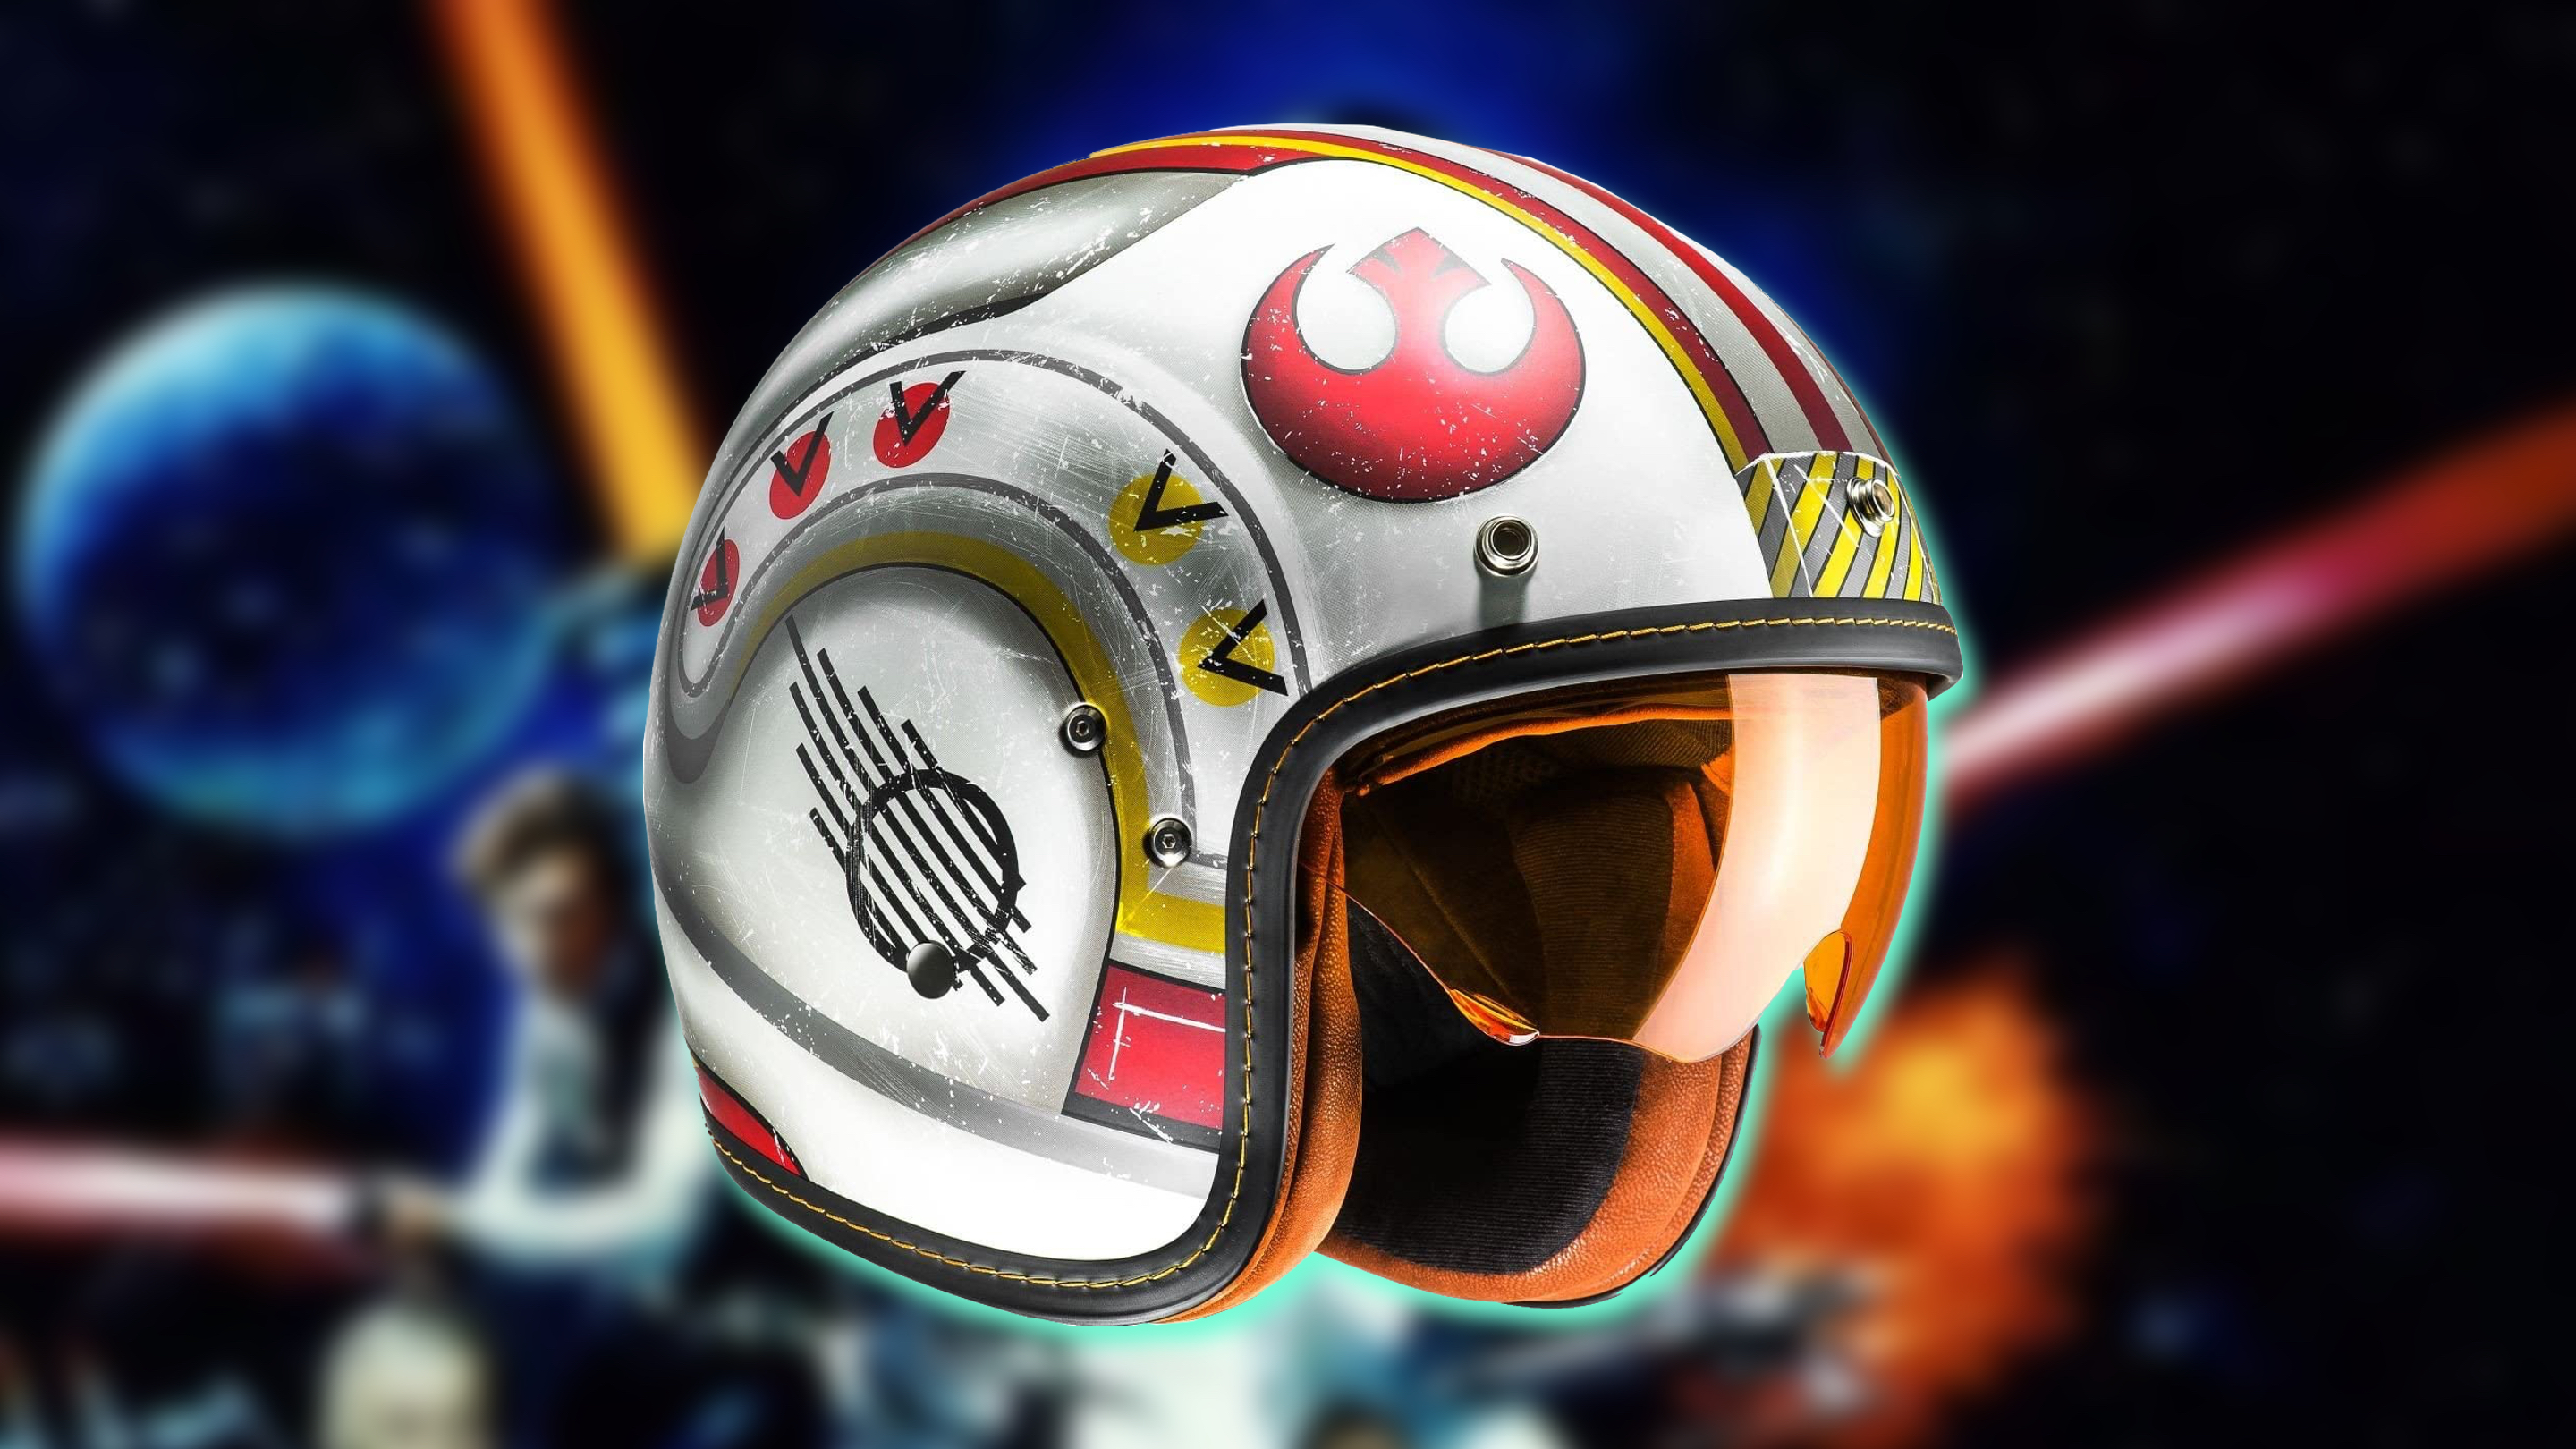 Date prisa, solo queda una unidad! Estos 2 cascos de moto Star Wars están al mejor precio posible en Amazon con un descuento de hasta el 70% -- Motos Autobild.es